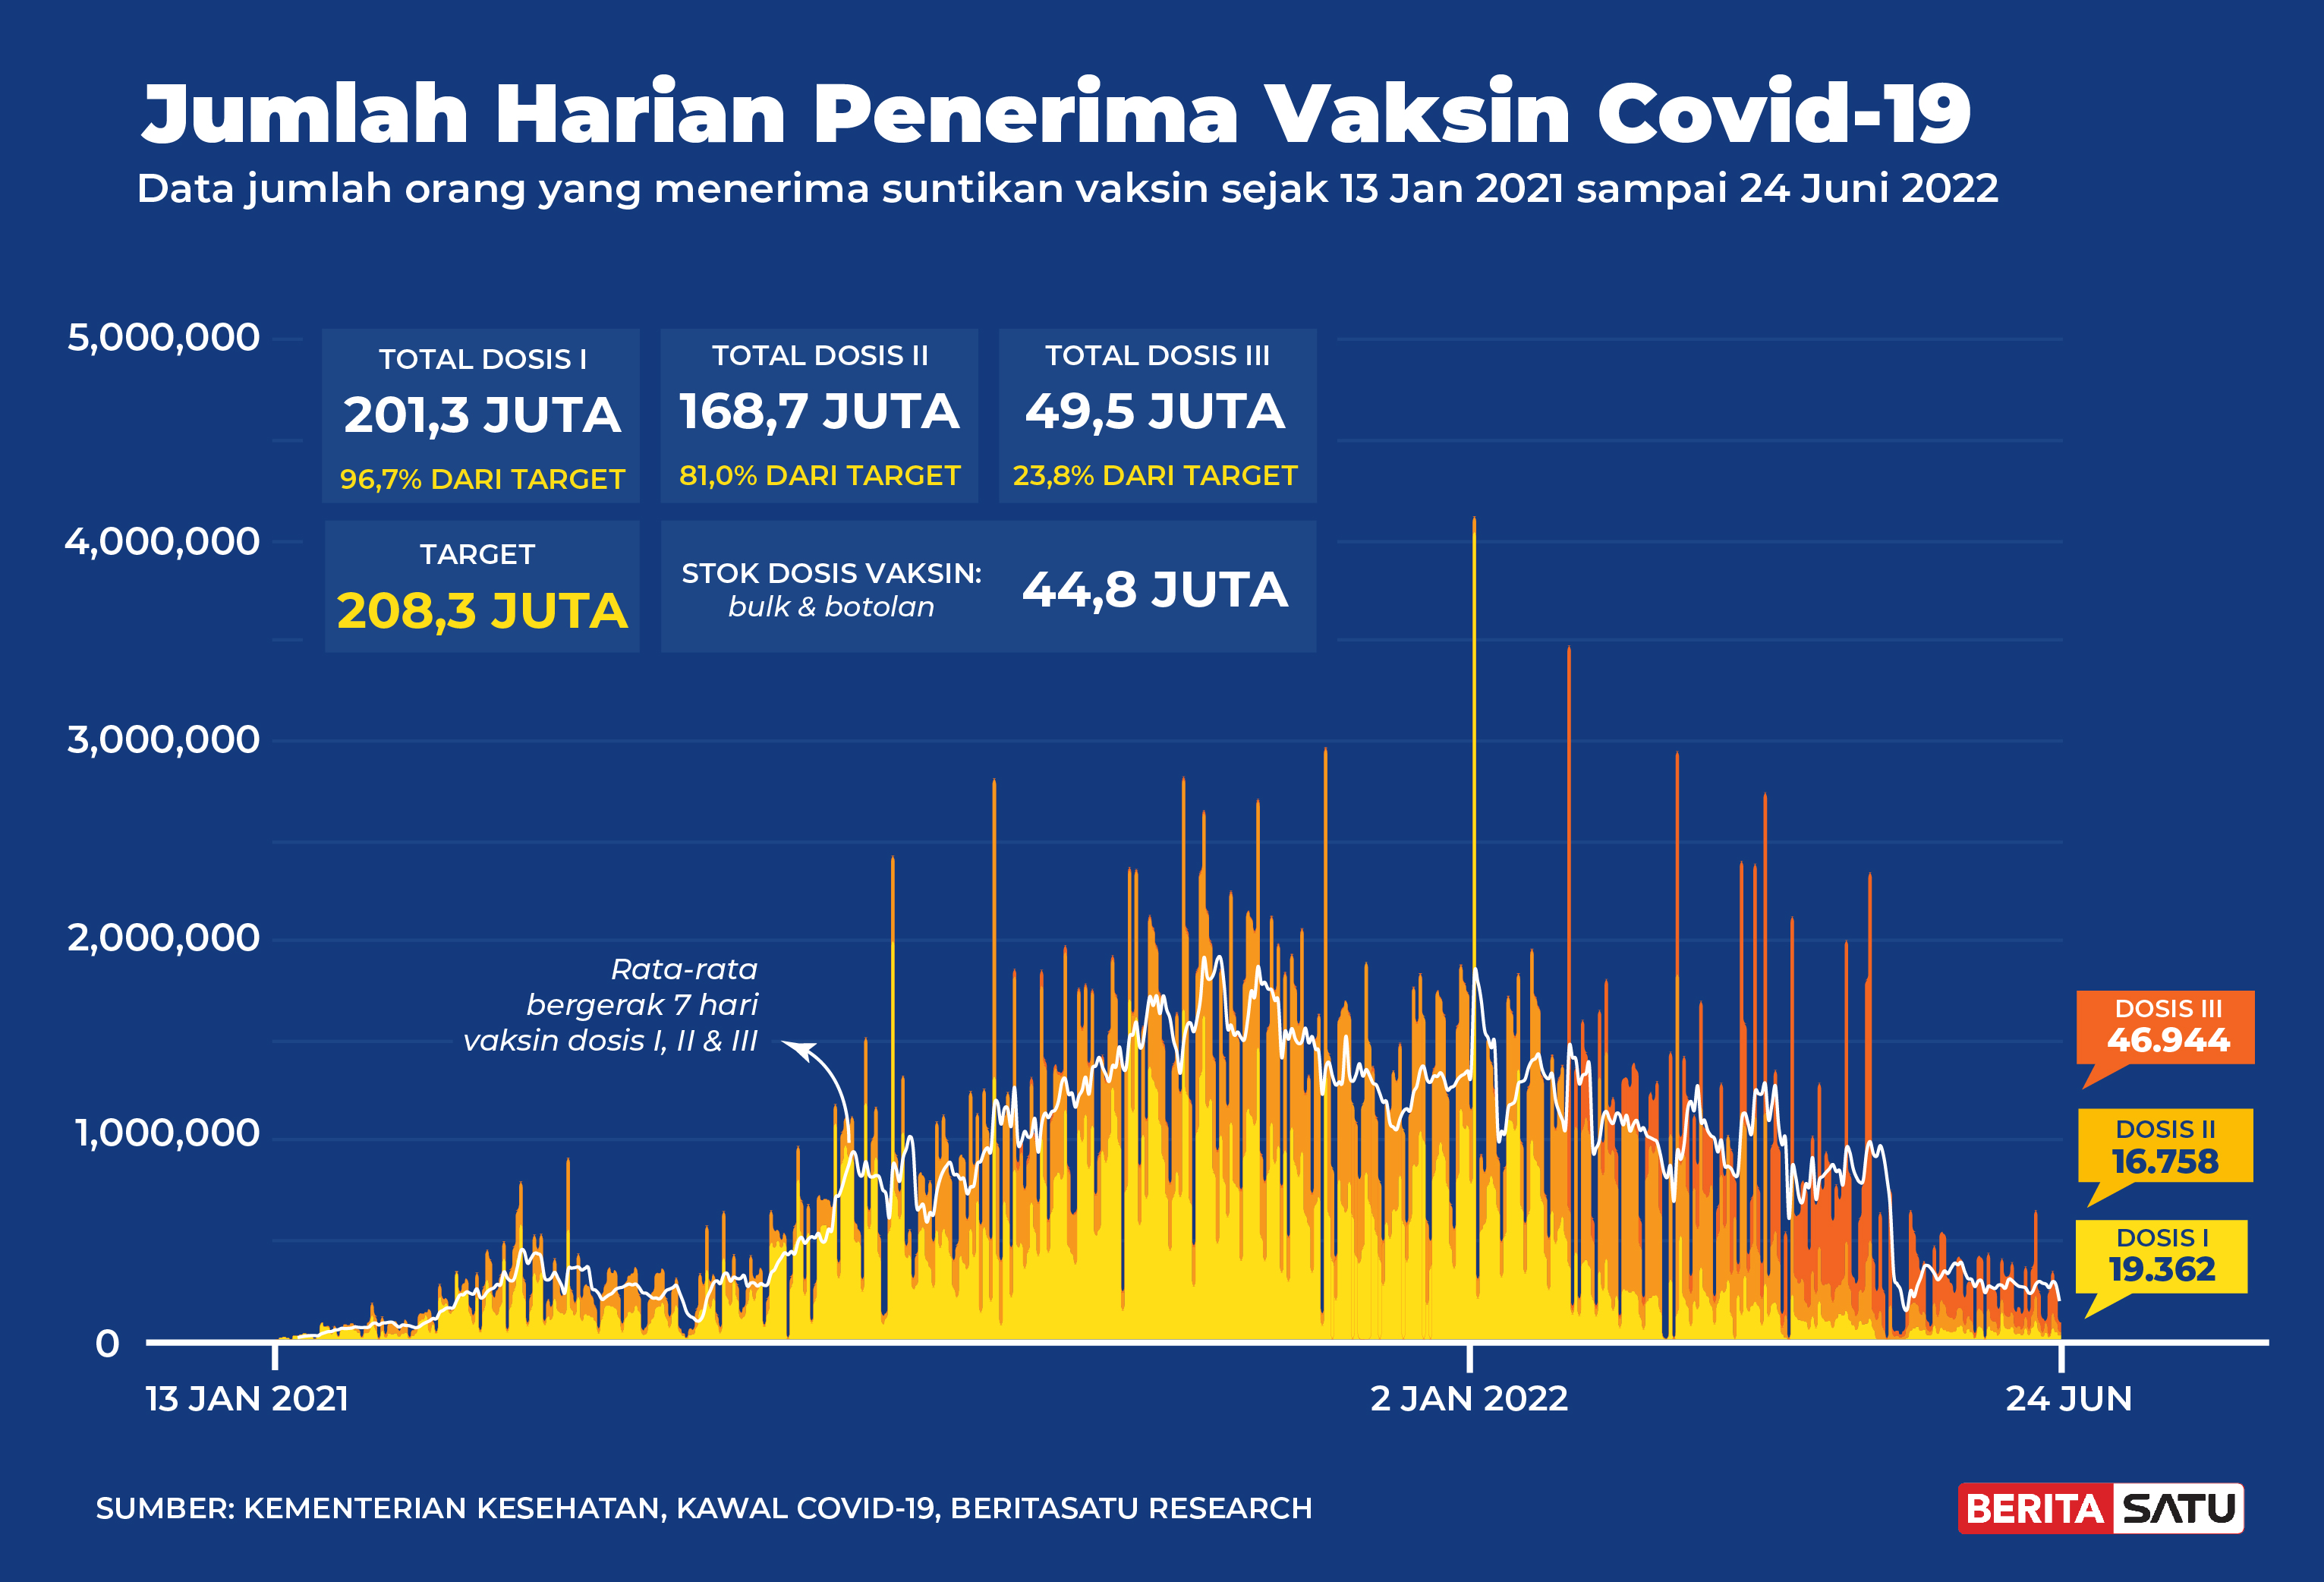 Penerima Vaksin Covid-19 di Indonesia sampai 24 Juni 2022